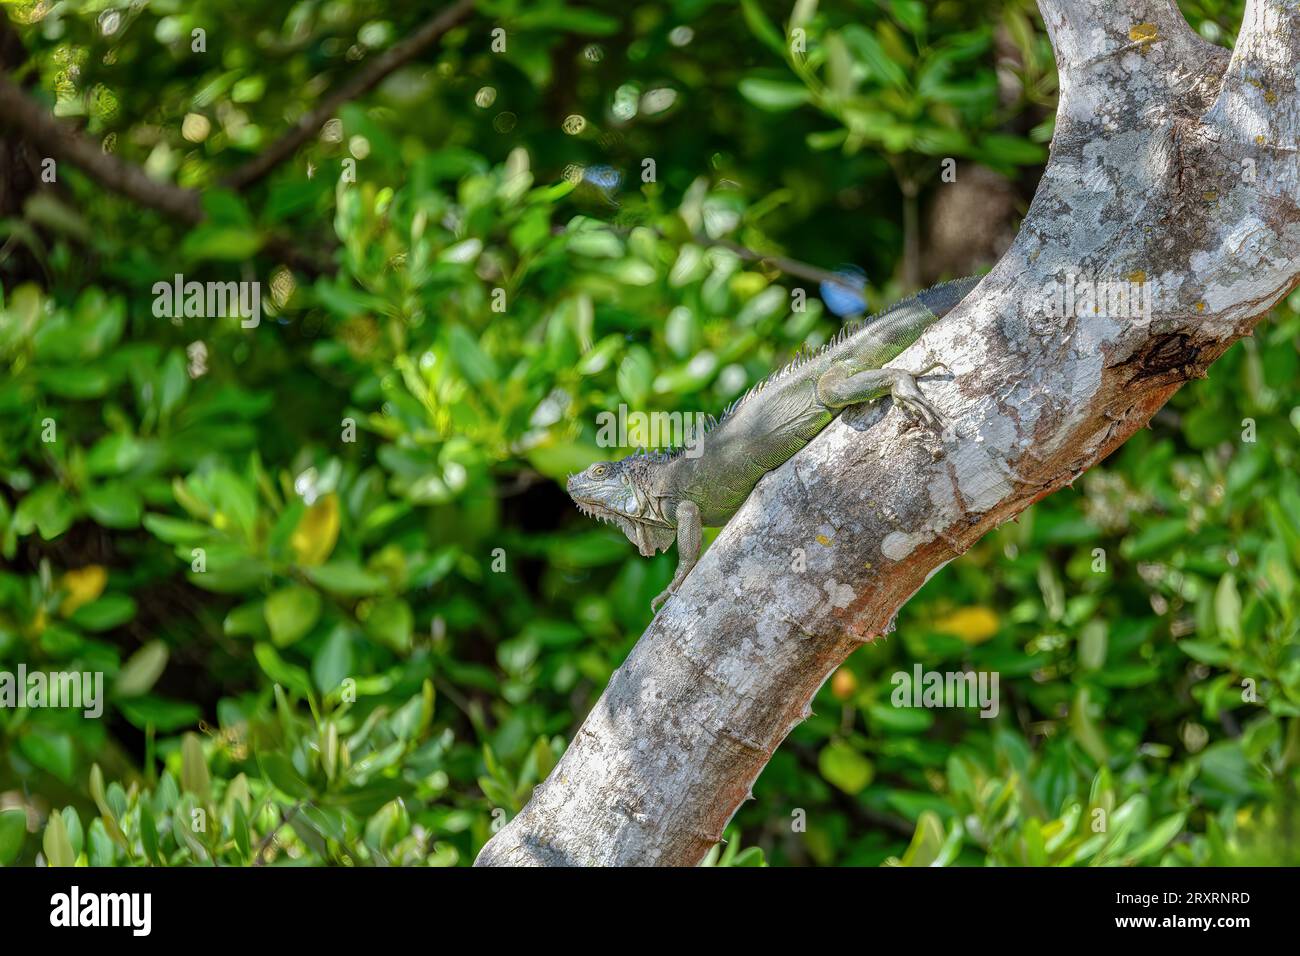 Grüner Leguan (Iguana Leguan) auf Baum im tropischen Regenwald, Rio Tempisque Guanacaste, Costa Rica Tierwelt Stockfoto